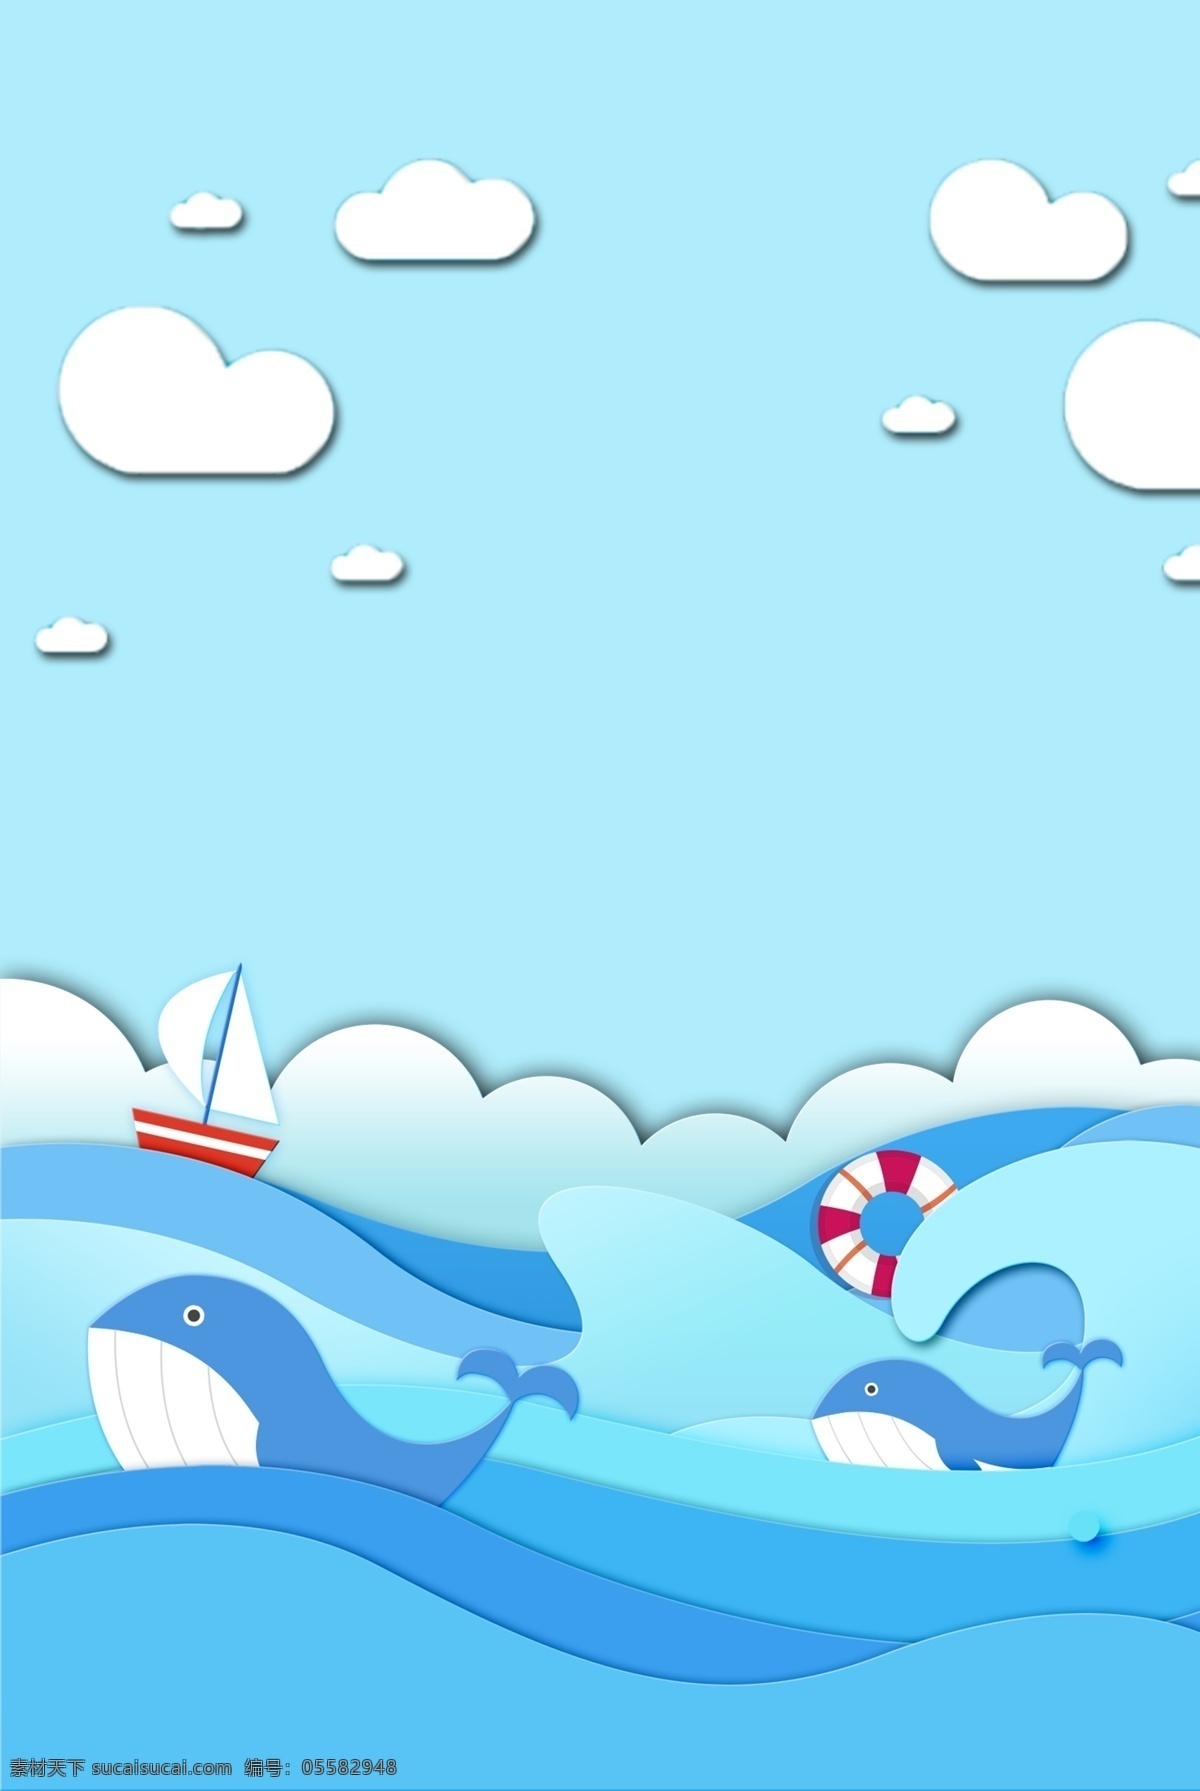 卡通 边框 蓝色 背景 海报 h5 海洋 手绘 广告 清新